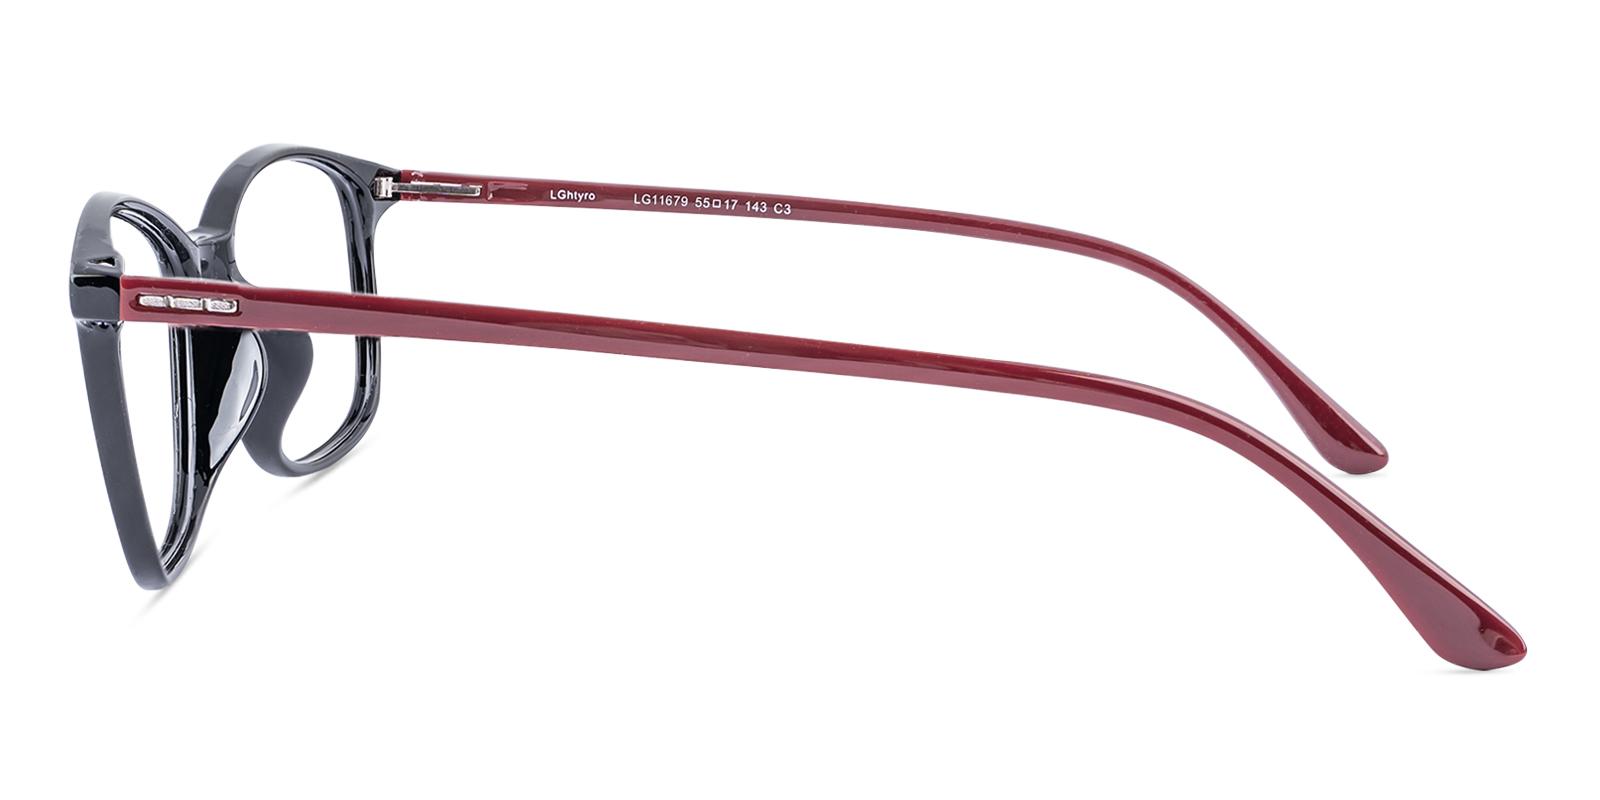 Teloain Red TR Eyeglasses , UniversalBridgeFit , Lightweight Frames from ABBE Glasses